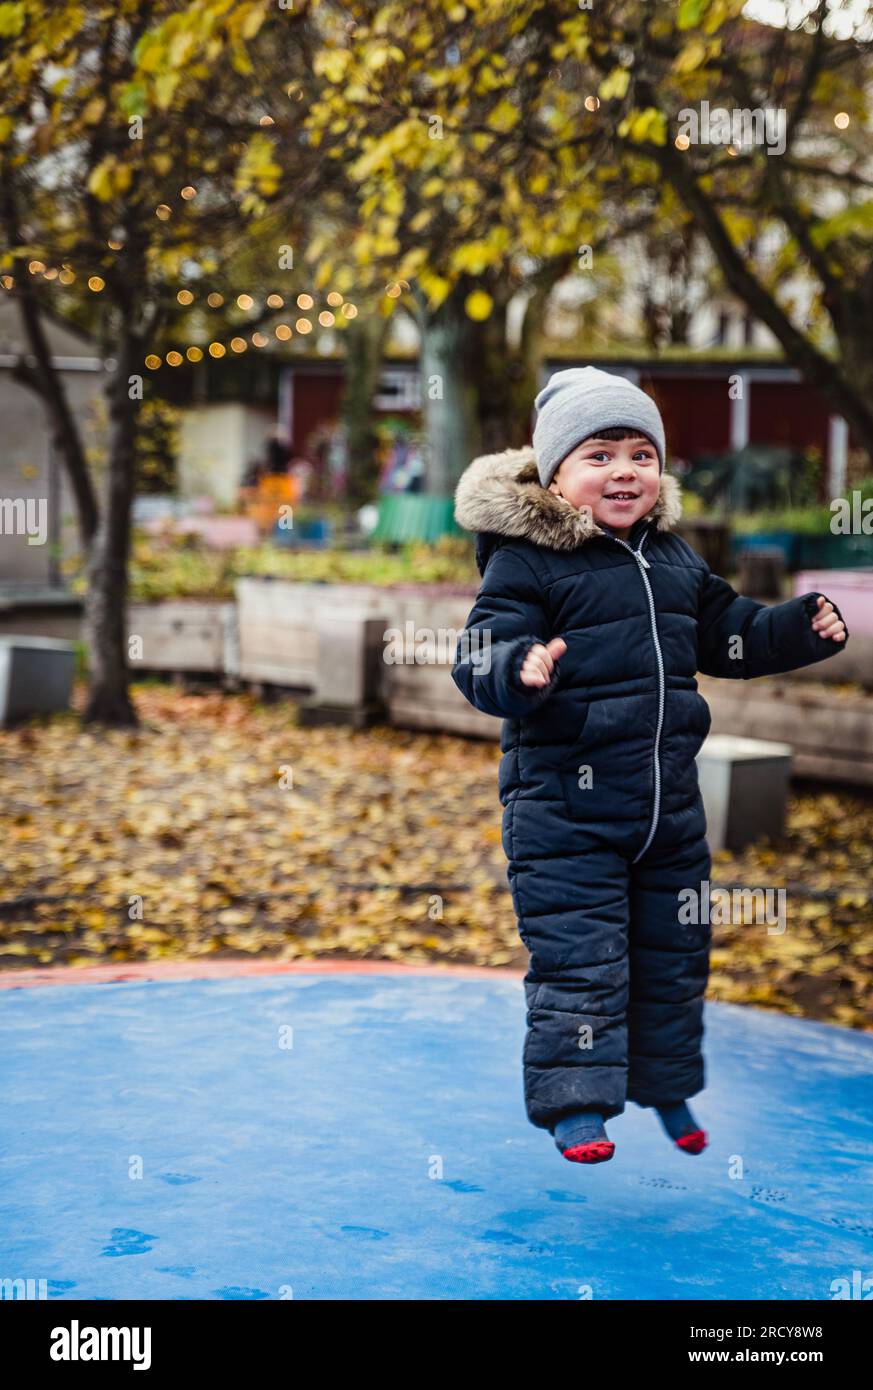 Ein Kind, das auf ein weiches Trampolin springt, fühlt sich auf einer morbiden Oberfläche geschützt. Sicherheits- und Schutzkonzept mit entspanntem Kind, das auf den Türsteher springt Stockfoto